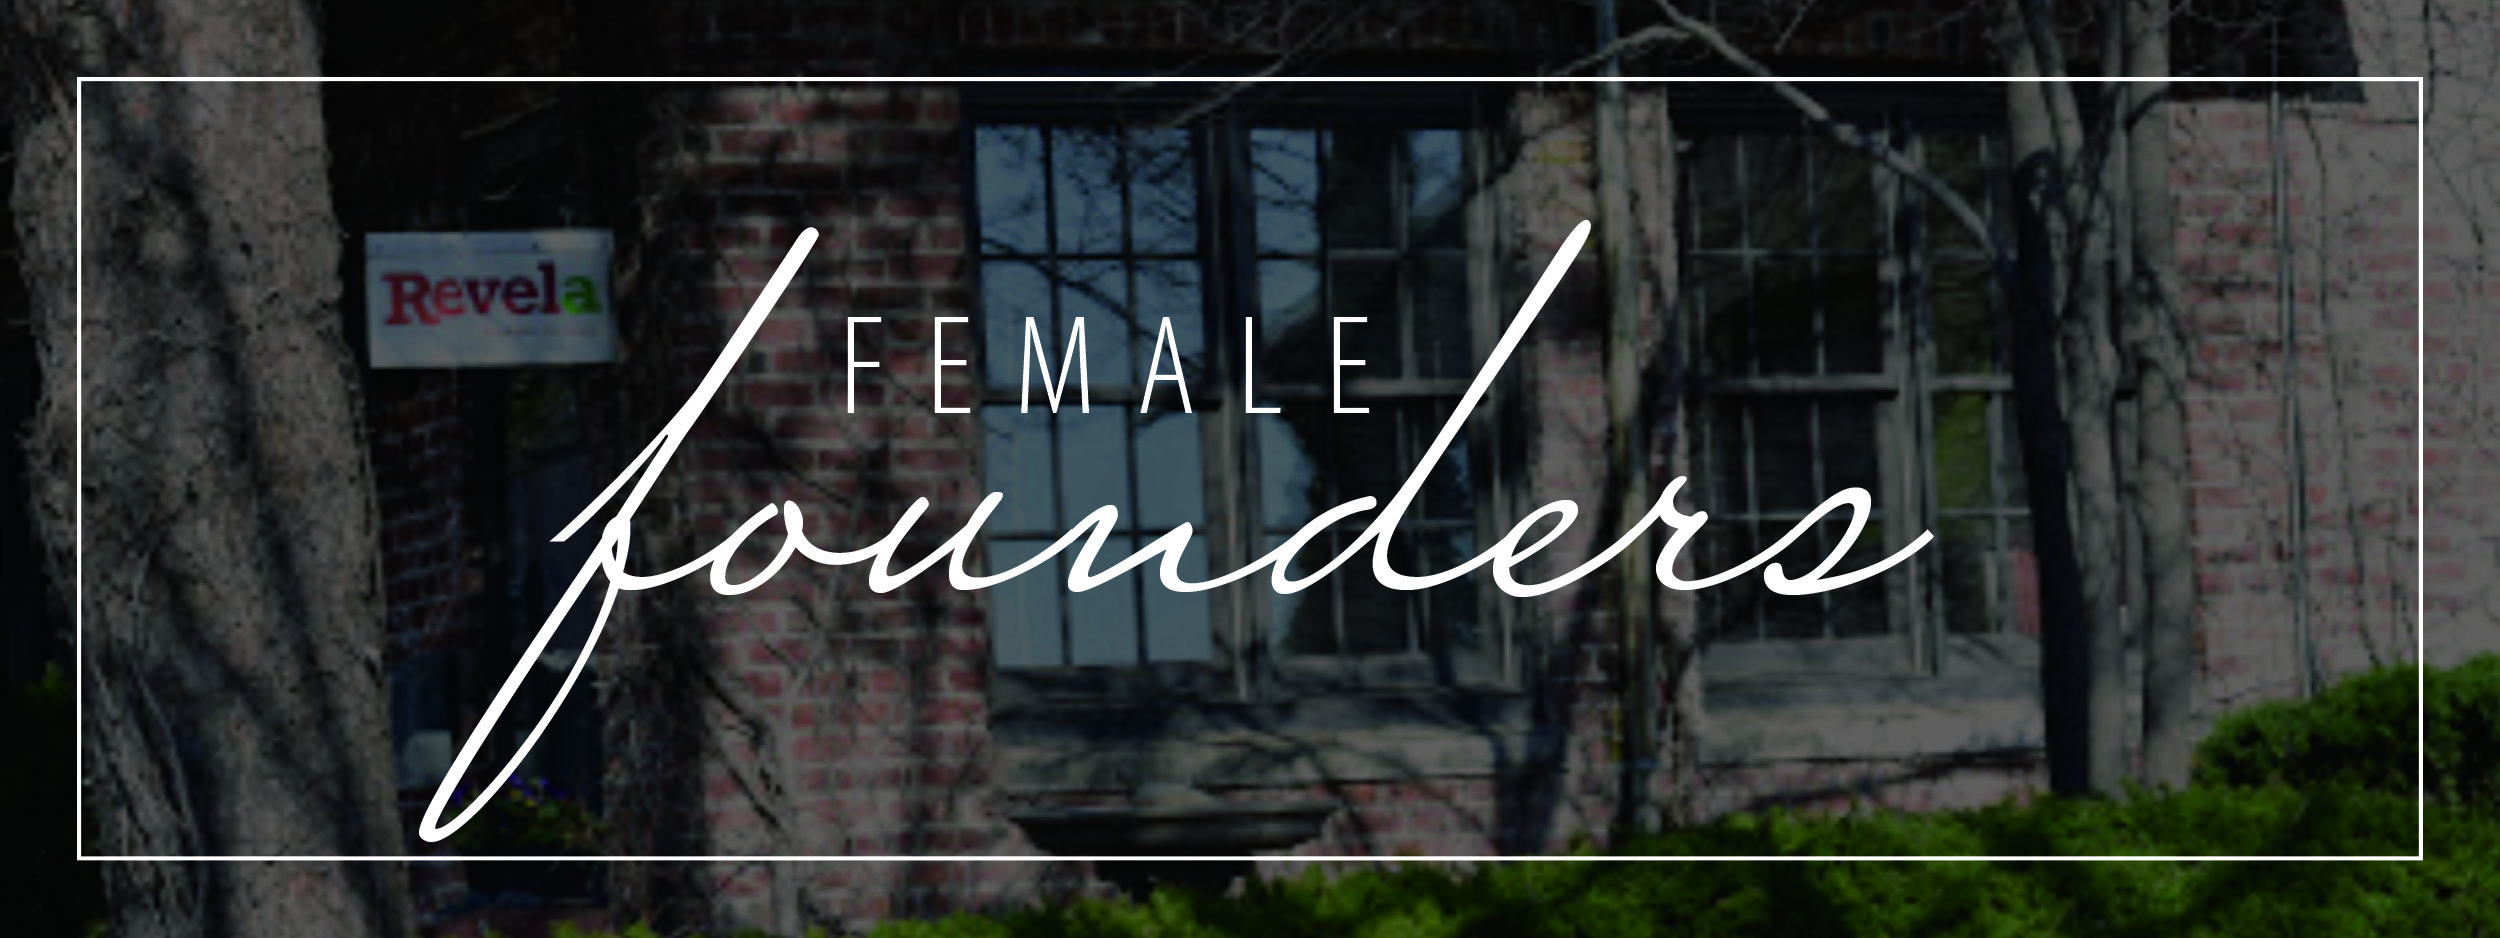 female founders written over image of outside of Revela